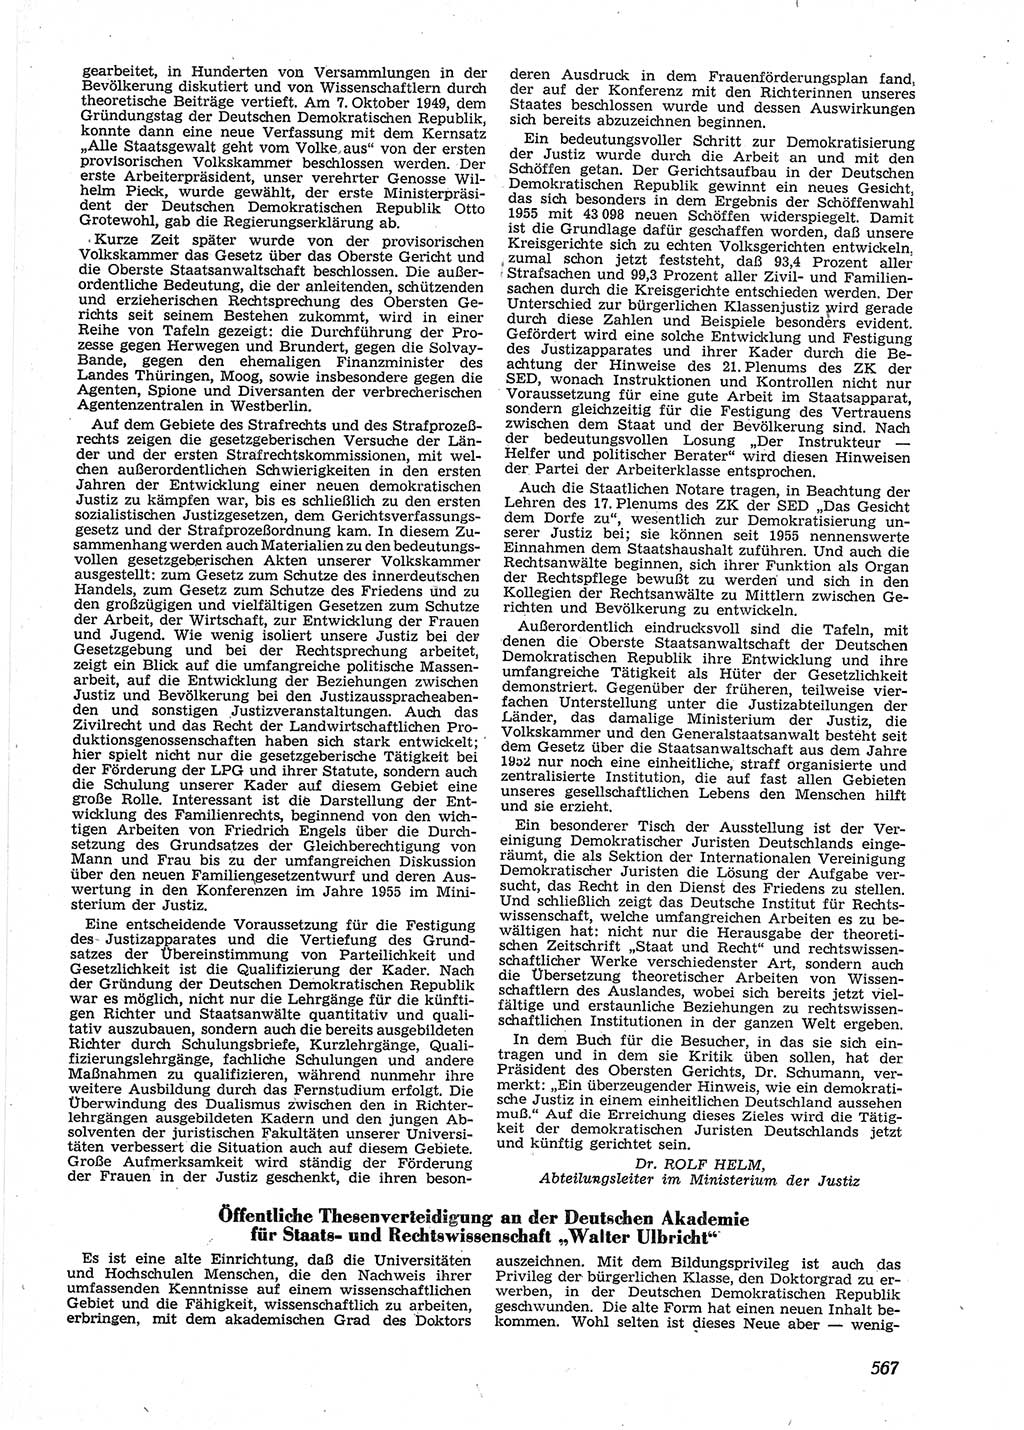 Neue Justiz (NJ), Zeitschrift für Recht und Rechtswissenschaft [Deutsche Demokratische Republik (DDR)], 9. Jahrgang 1955, Seite 567 (NJ DDR 1955, S. 567)